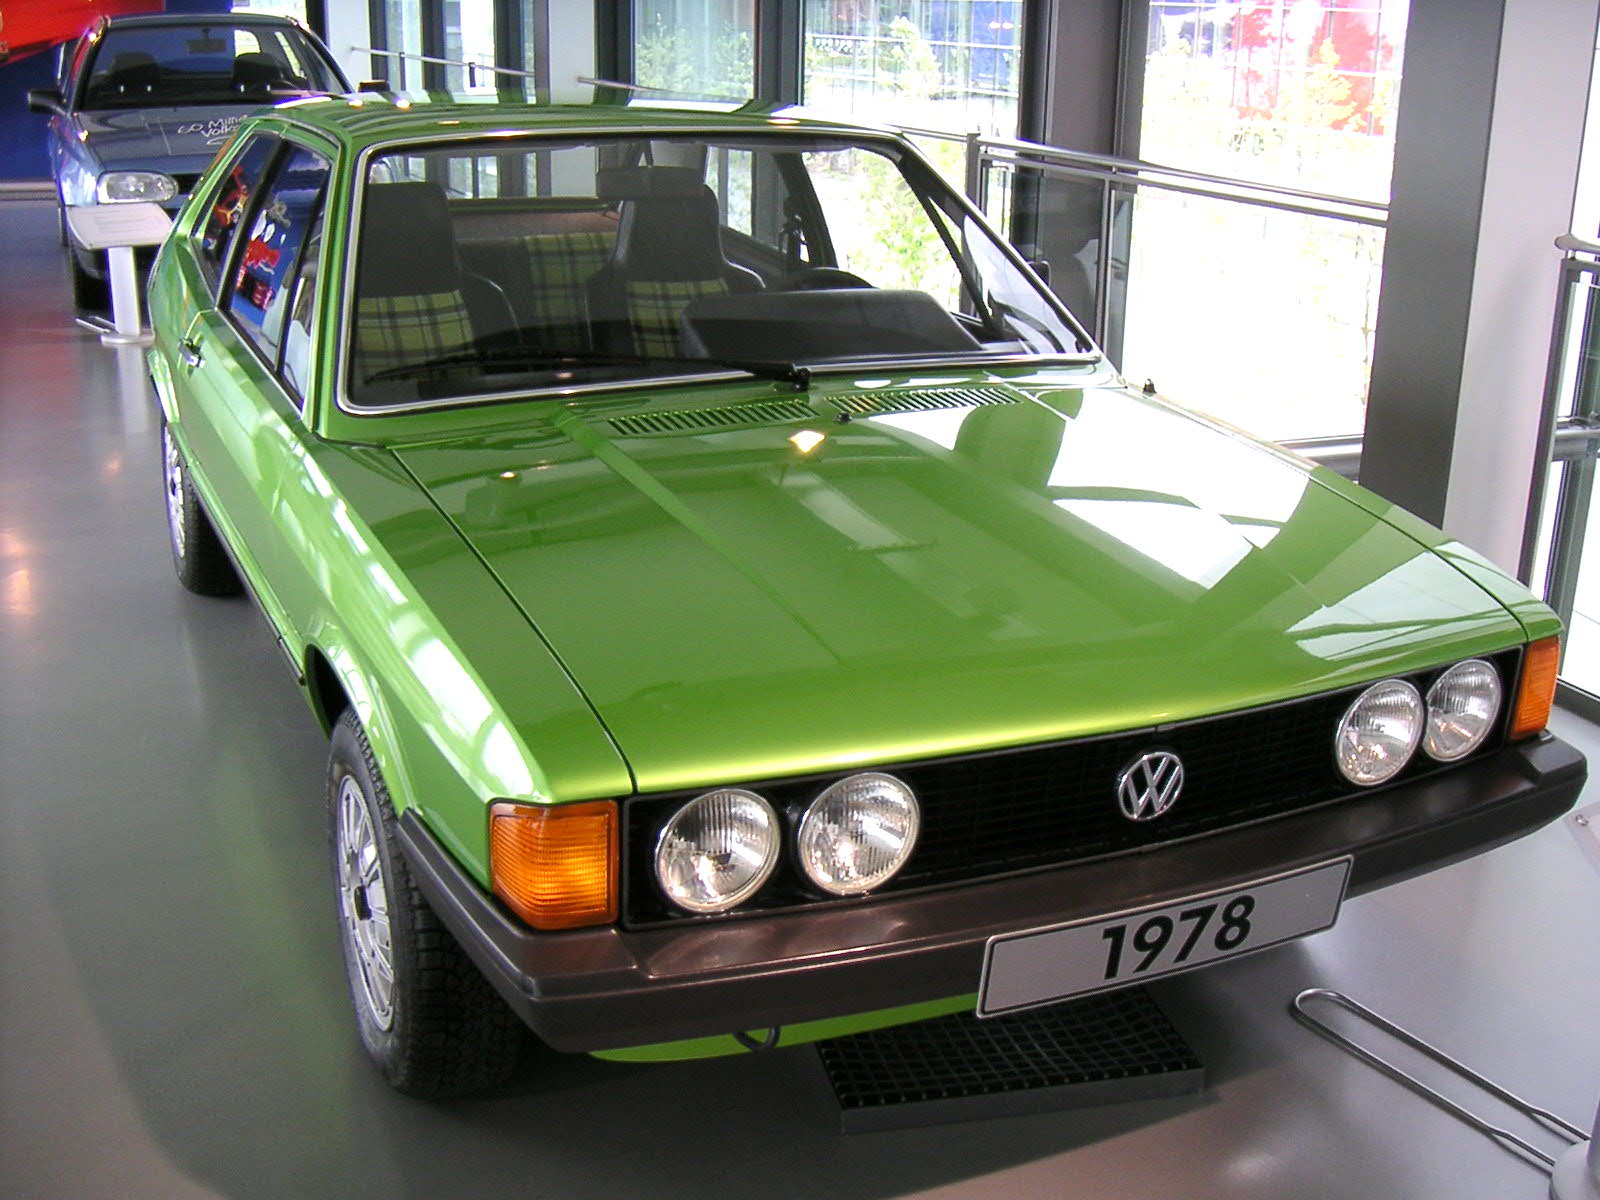 VW Scirocco I von 1978 in der Autostadt Wolfsburg, Stadtbrücke